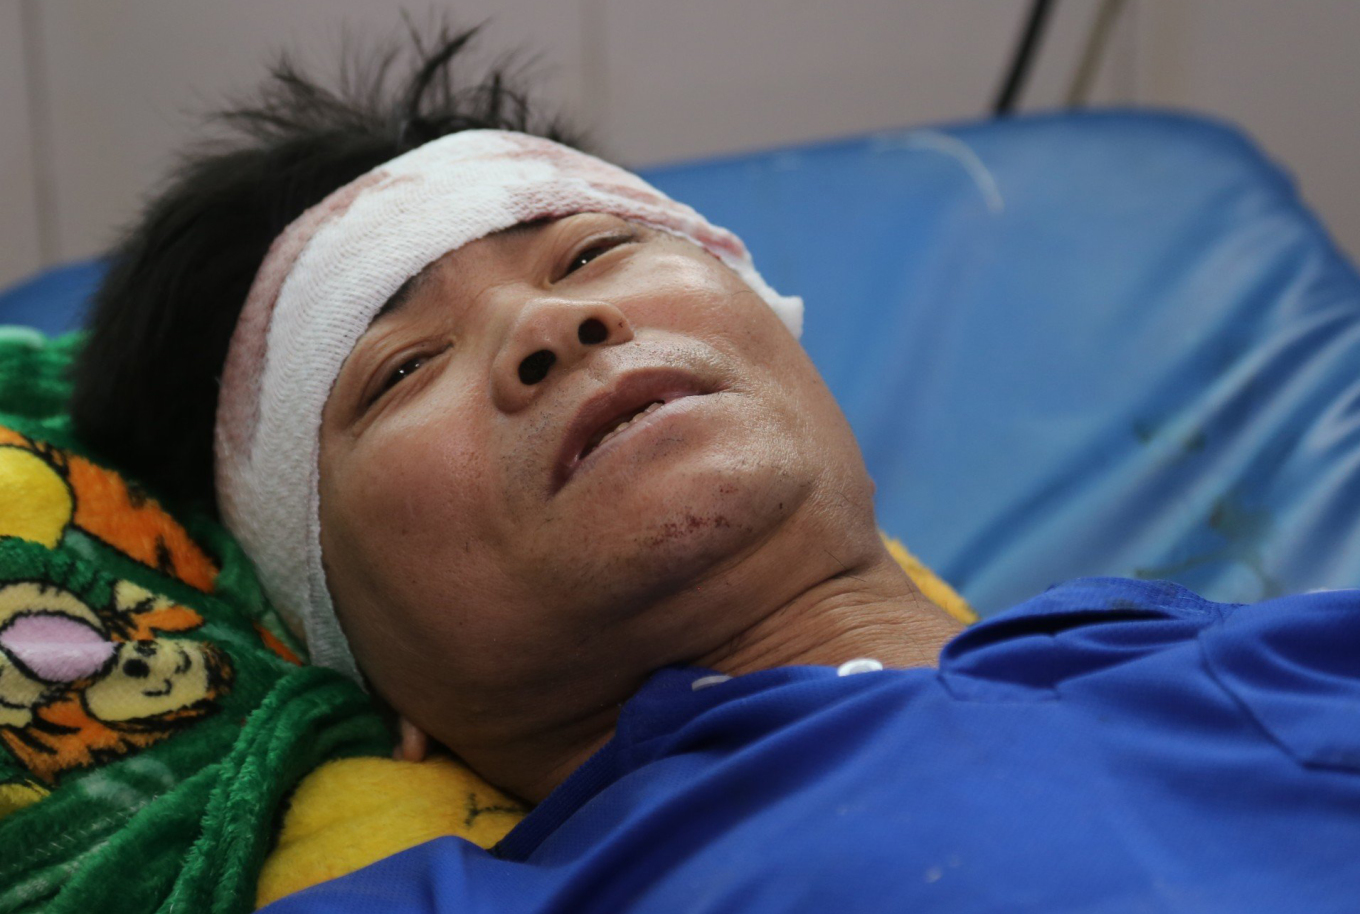 Trích xuất camera vụ nổ nồi hơi khiến 6 công nhân tử vong ở Đồng Nai: Rung chuyển một cả một công ty, mảnh sắt găm vào cơ thể như đạn bắn - Ảnh 2